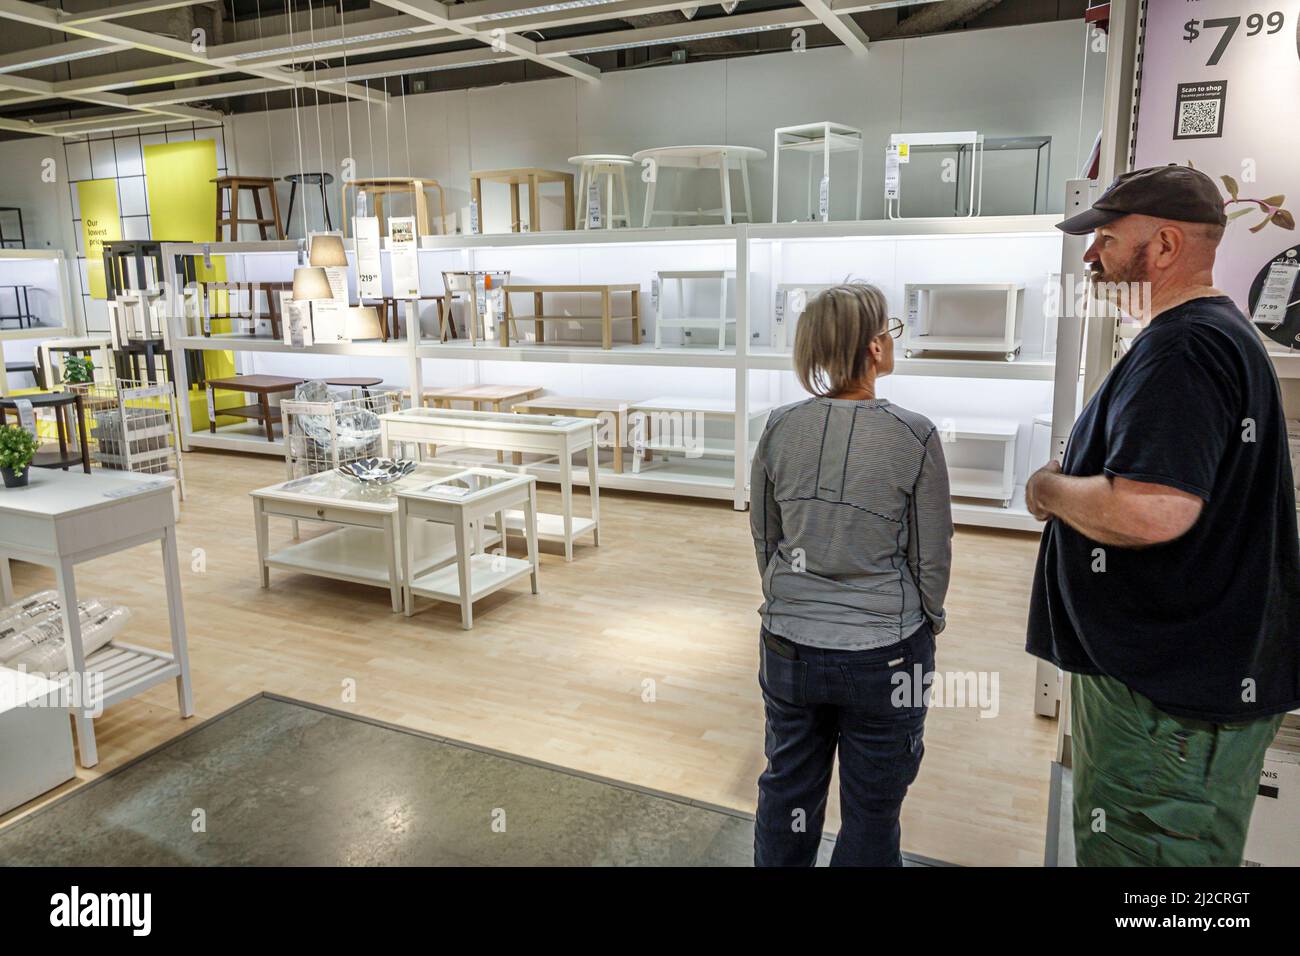 Miami Florida IKEA maison biens meubles accessoires meubles décor shopping acheteurs à l'intérieur de l'intérieur exposition vente tables couple regardant homme femme Banque D'Images